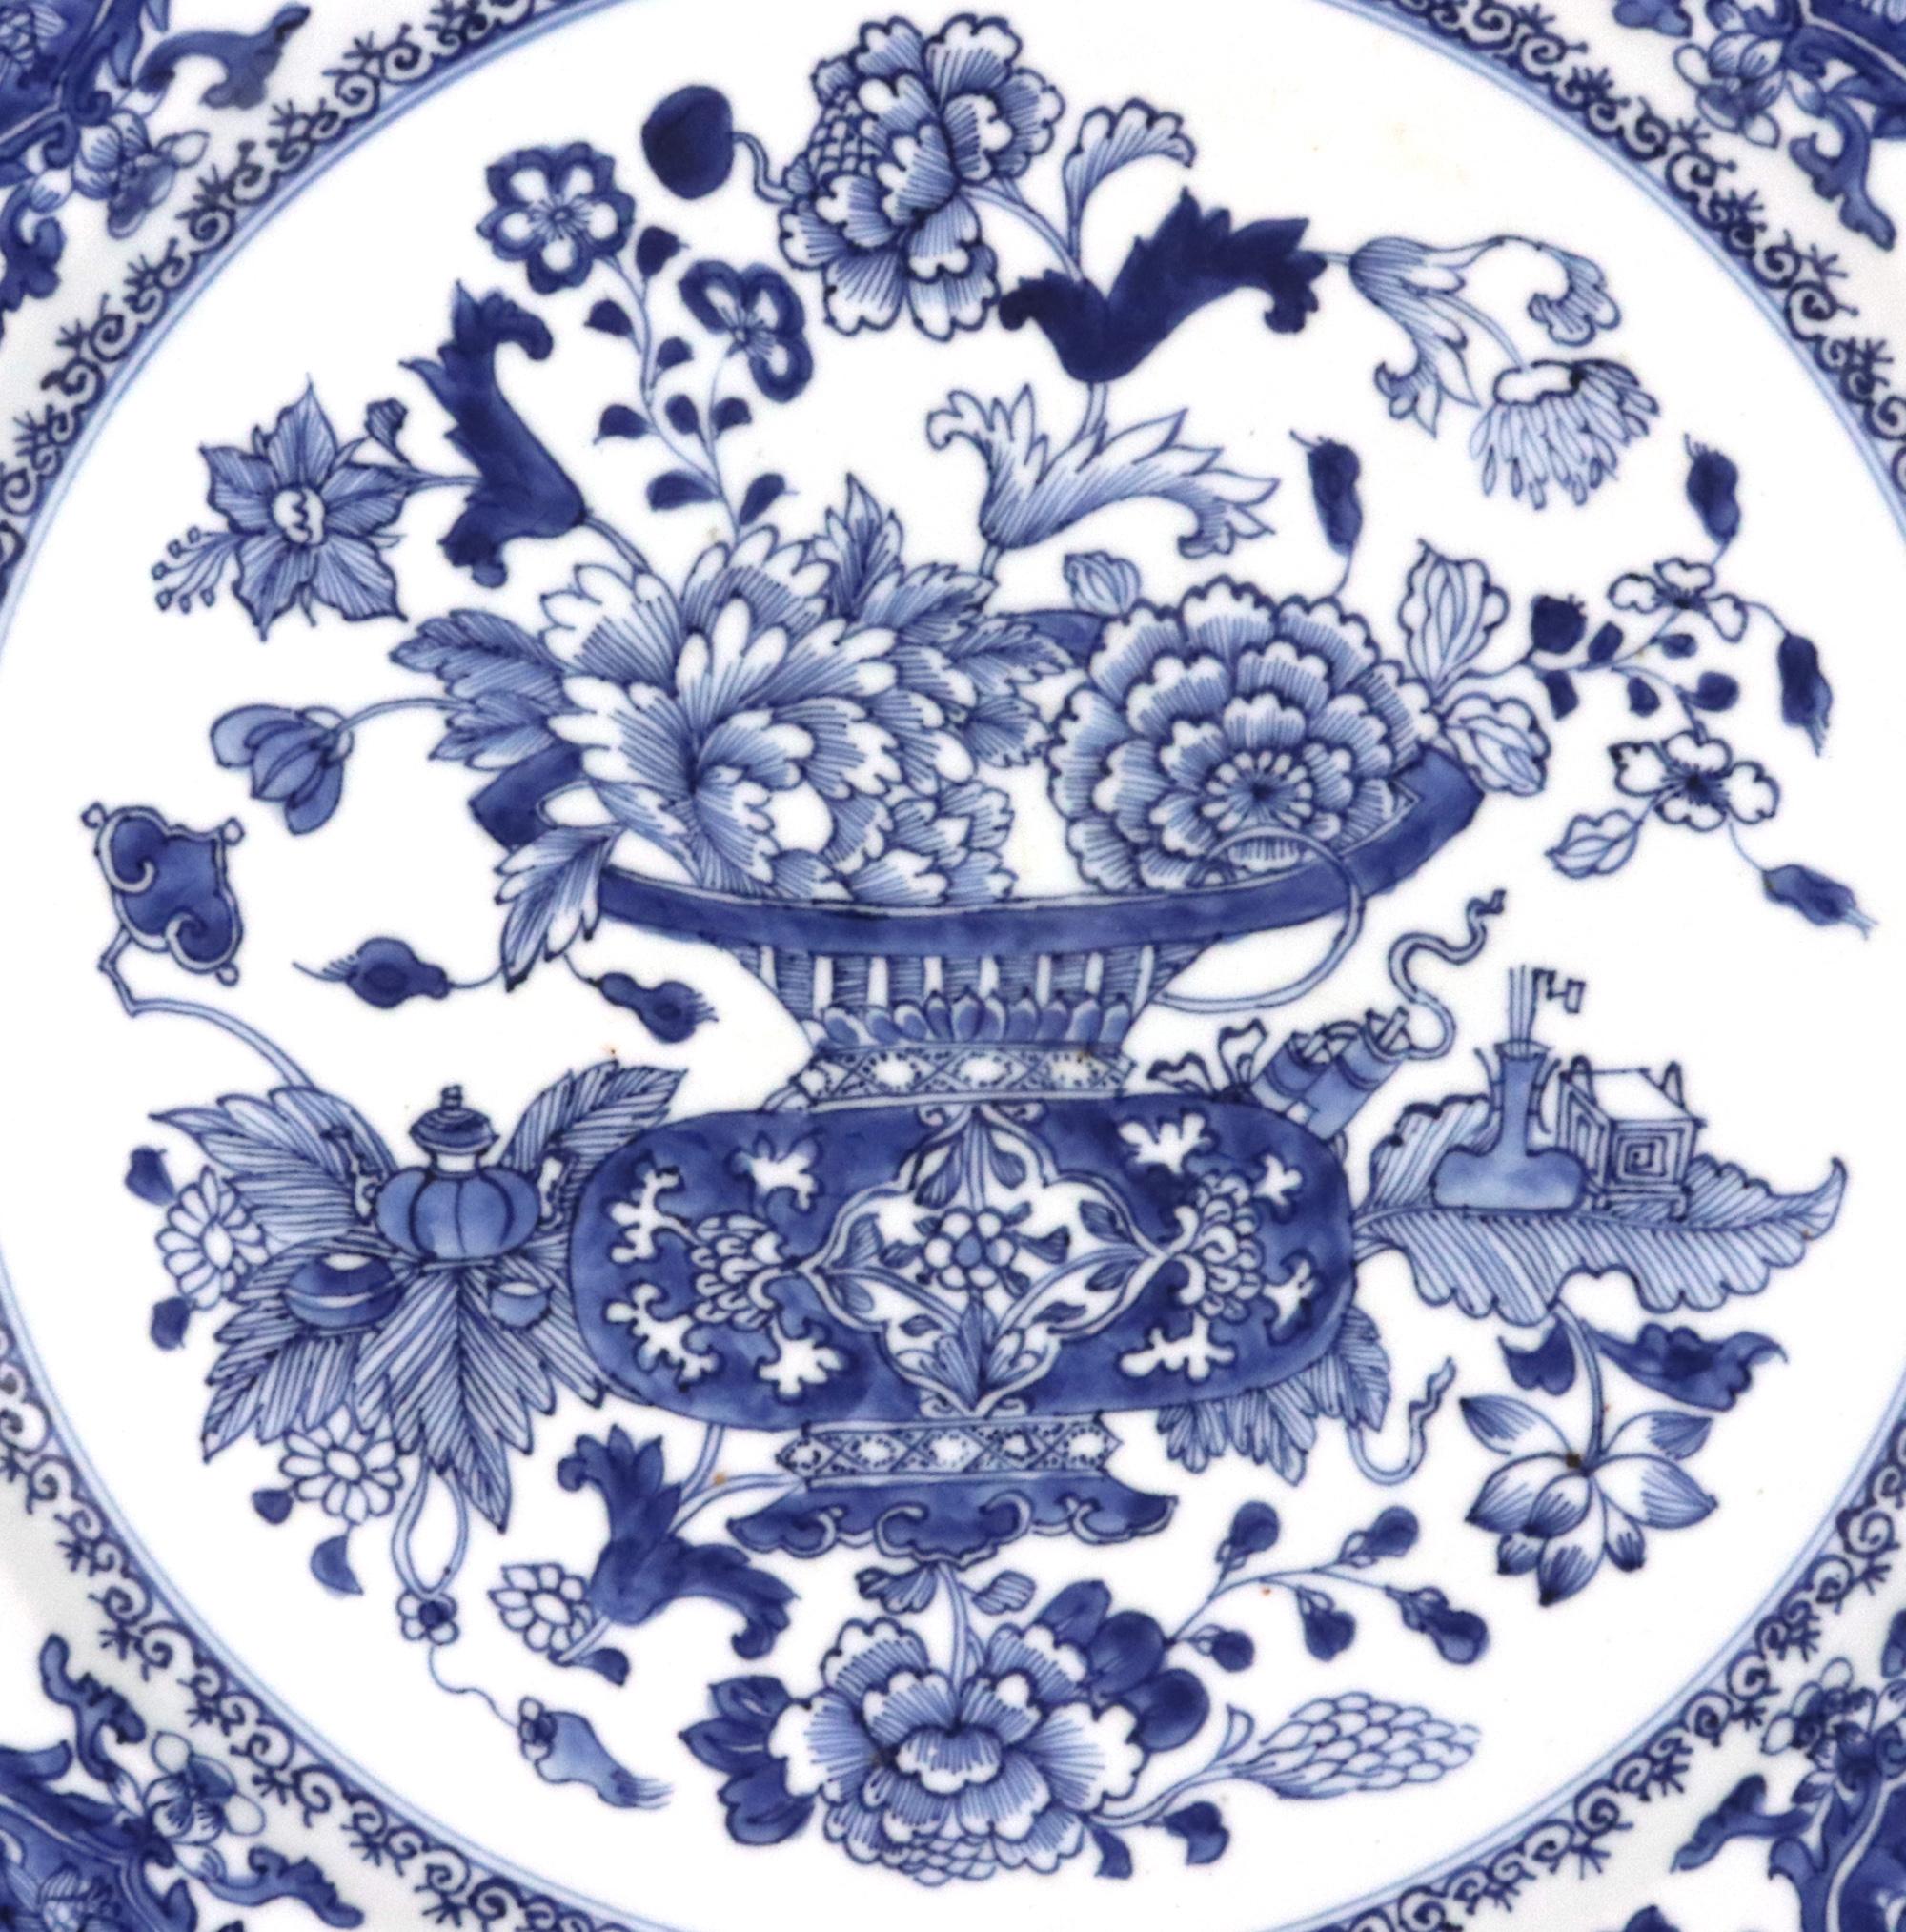 Chinesischer Export Porzellan Unterglasurblaue Schale,
CIRCA 1775

Die gut bemalte chinesische Export-Porzellanschale ist in prächtigem Unterglasurblau mit einem zentralen großen Doppelzensor bemalt, der obere durchbrochene Teil ist mit blühenden